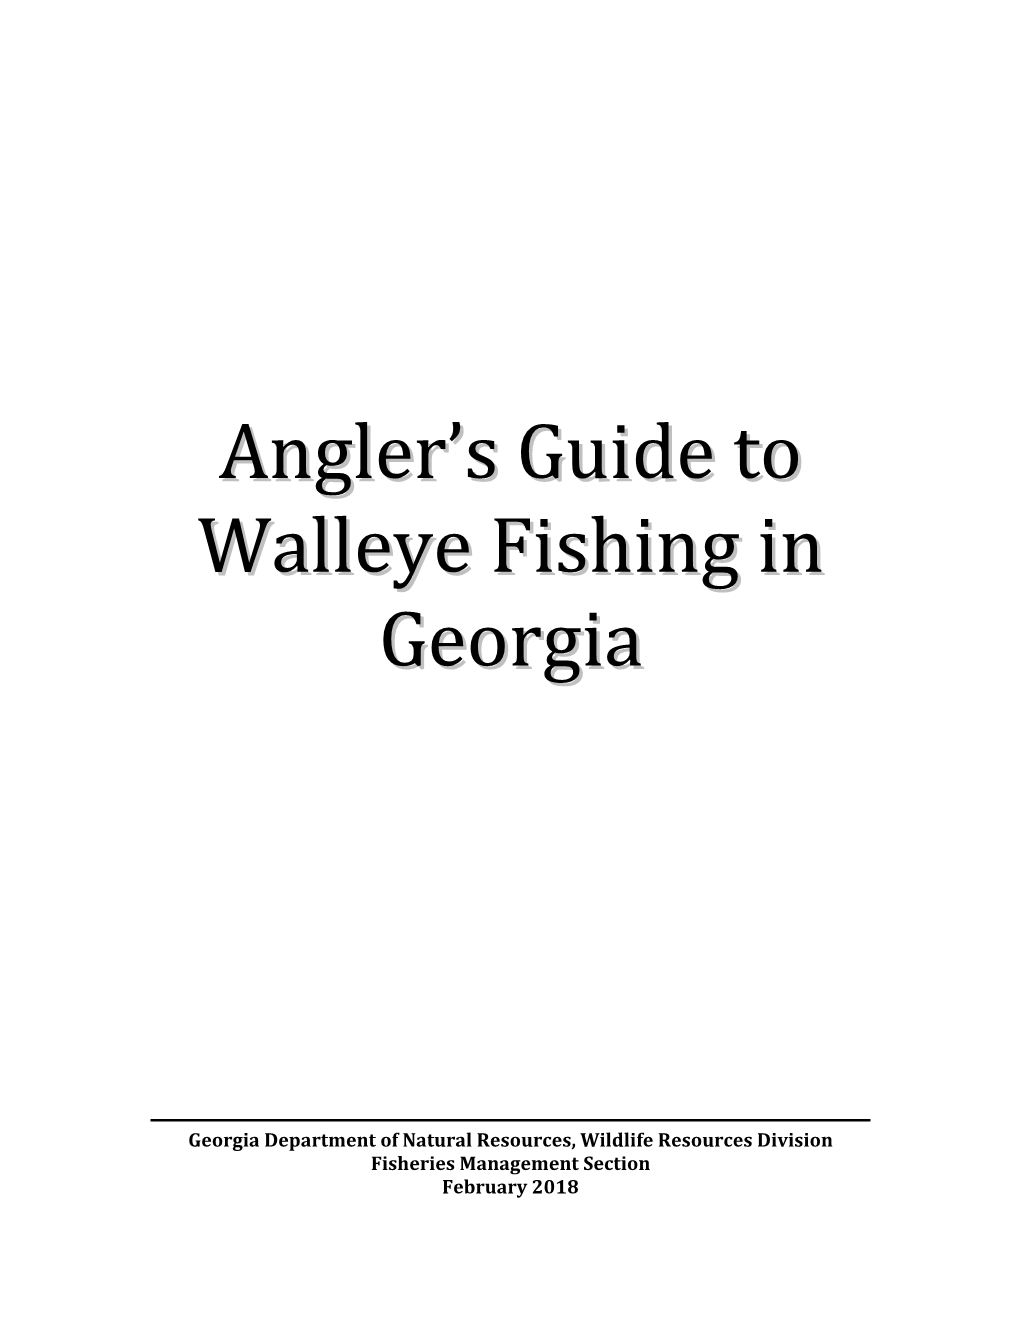 Walleye Fishing Guide